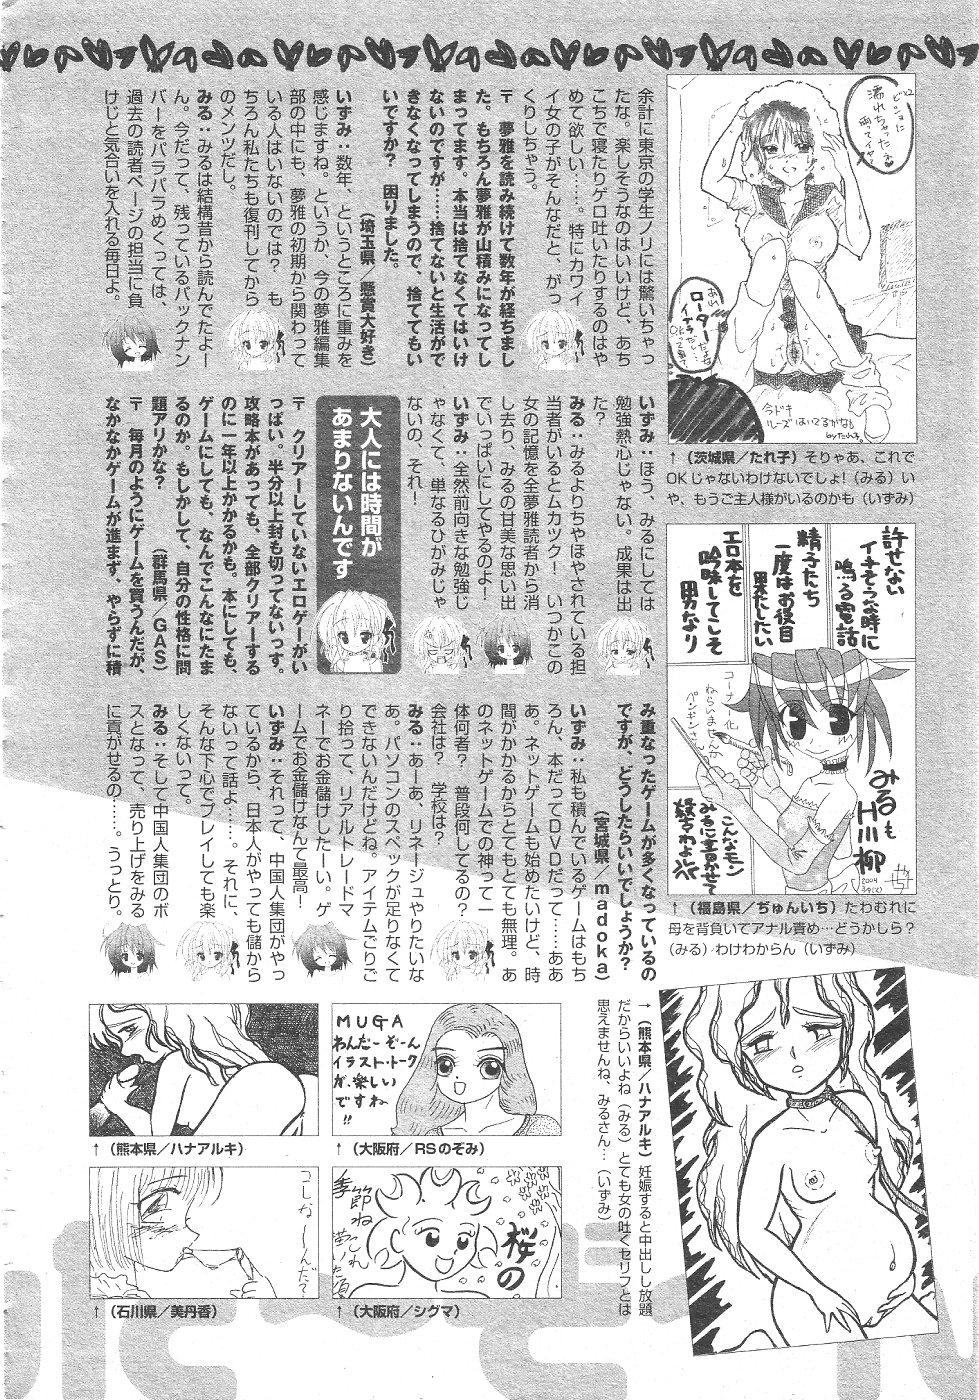 Gekkan Comic Muga 2004-06 Vol.10 413